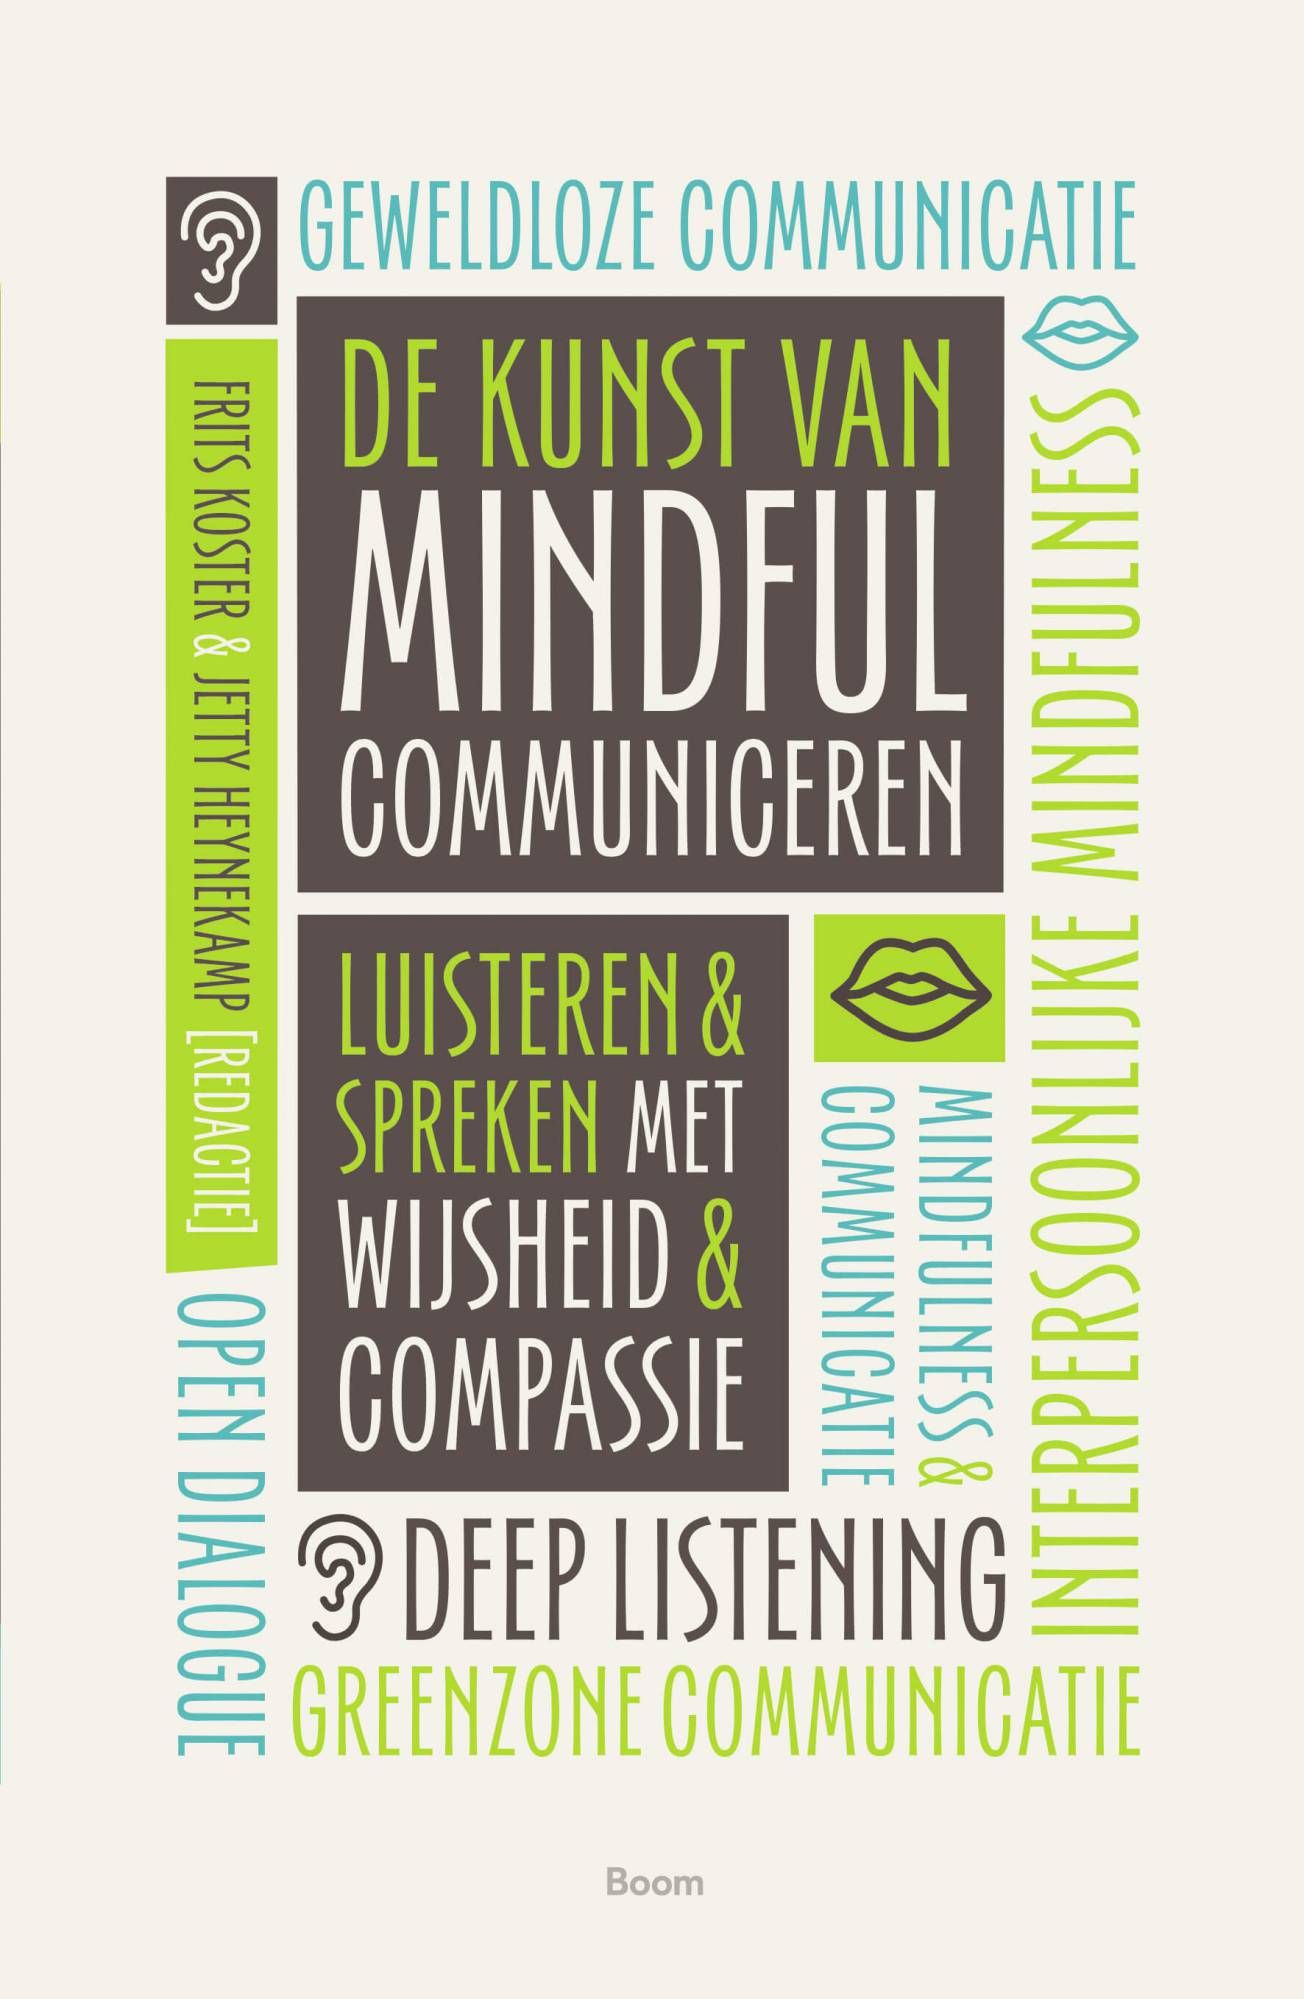 "Interpersoonlijke mindfulness - samen ontwaken", in "De kunst van mindful communiceren"